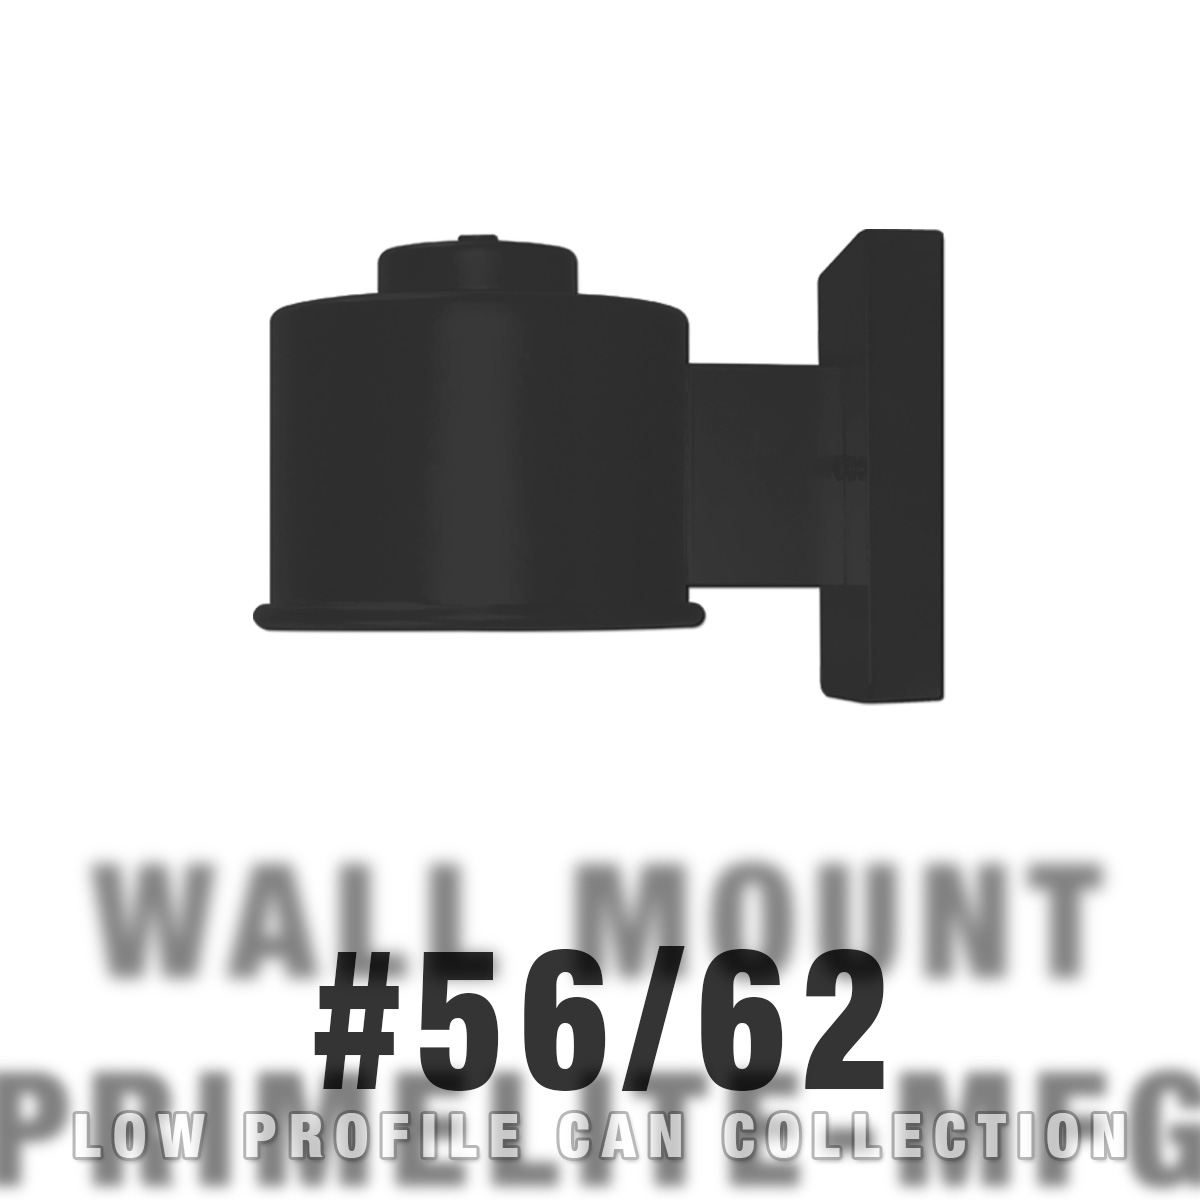 wall mount #56/62